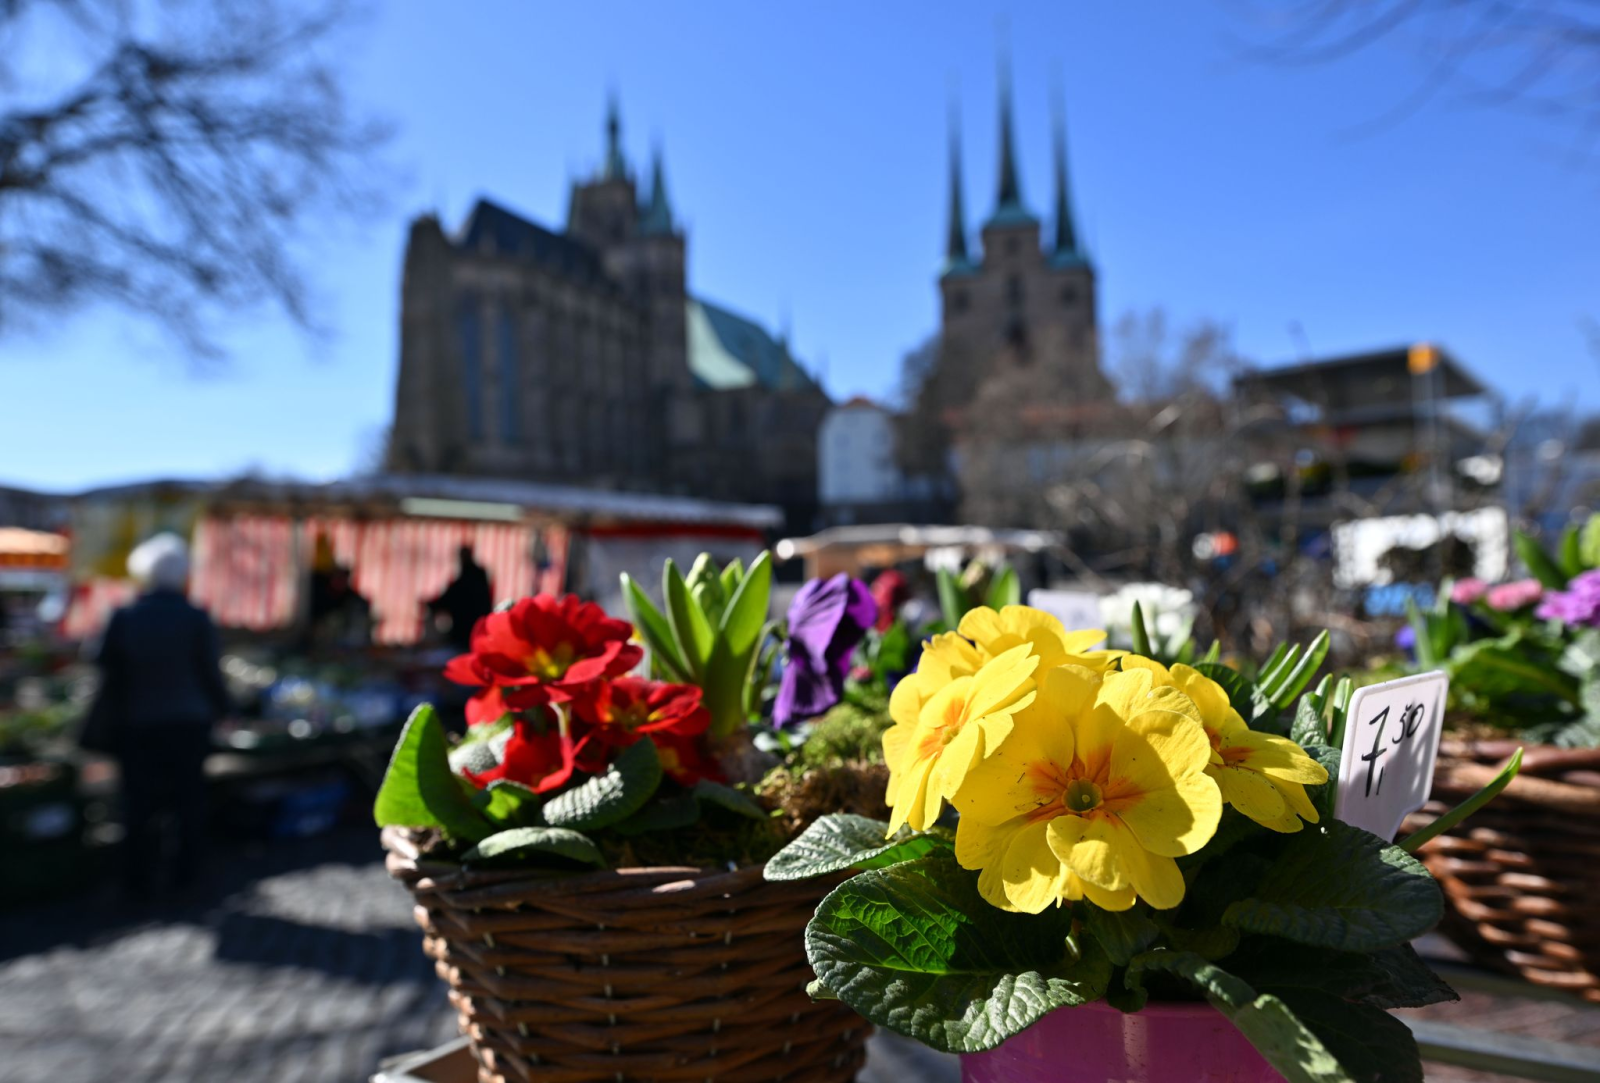 Blumen blühen an einem Marktstand auf dem Domplatz.